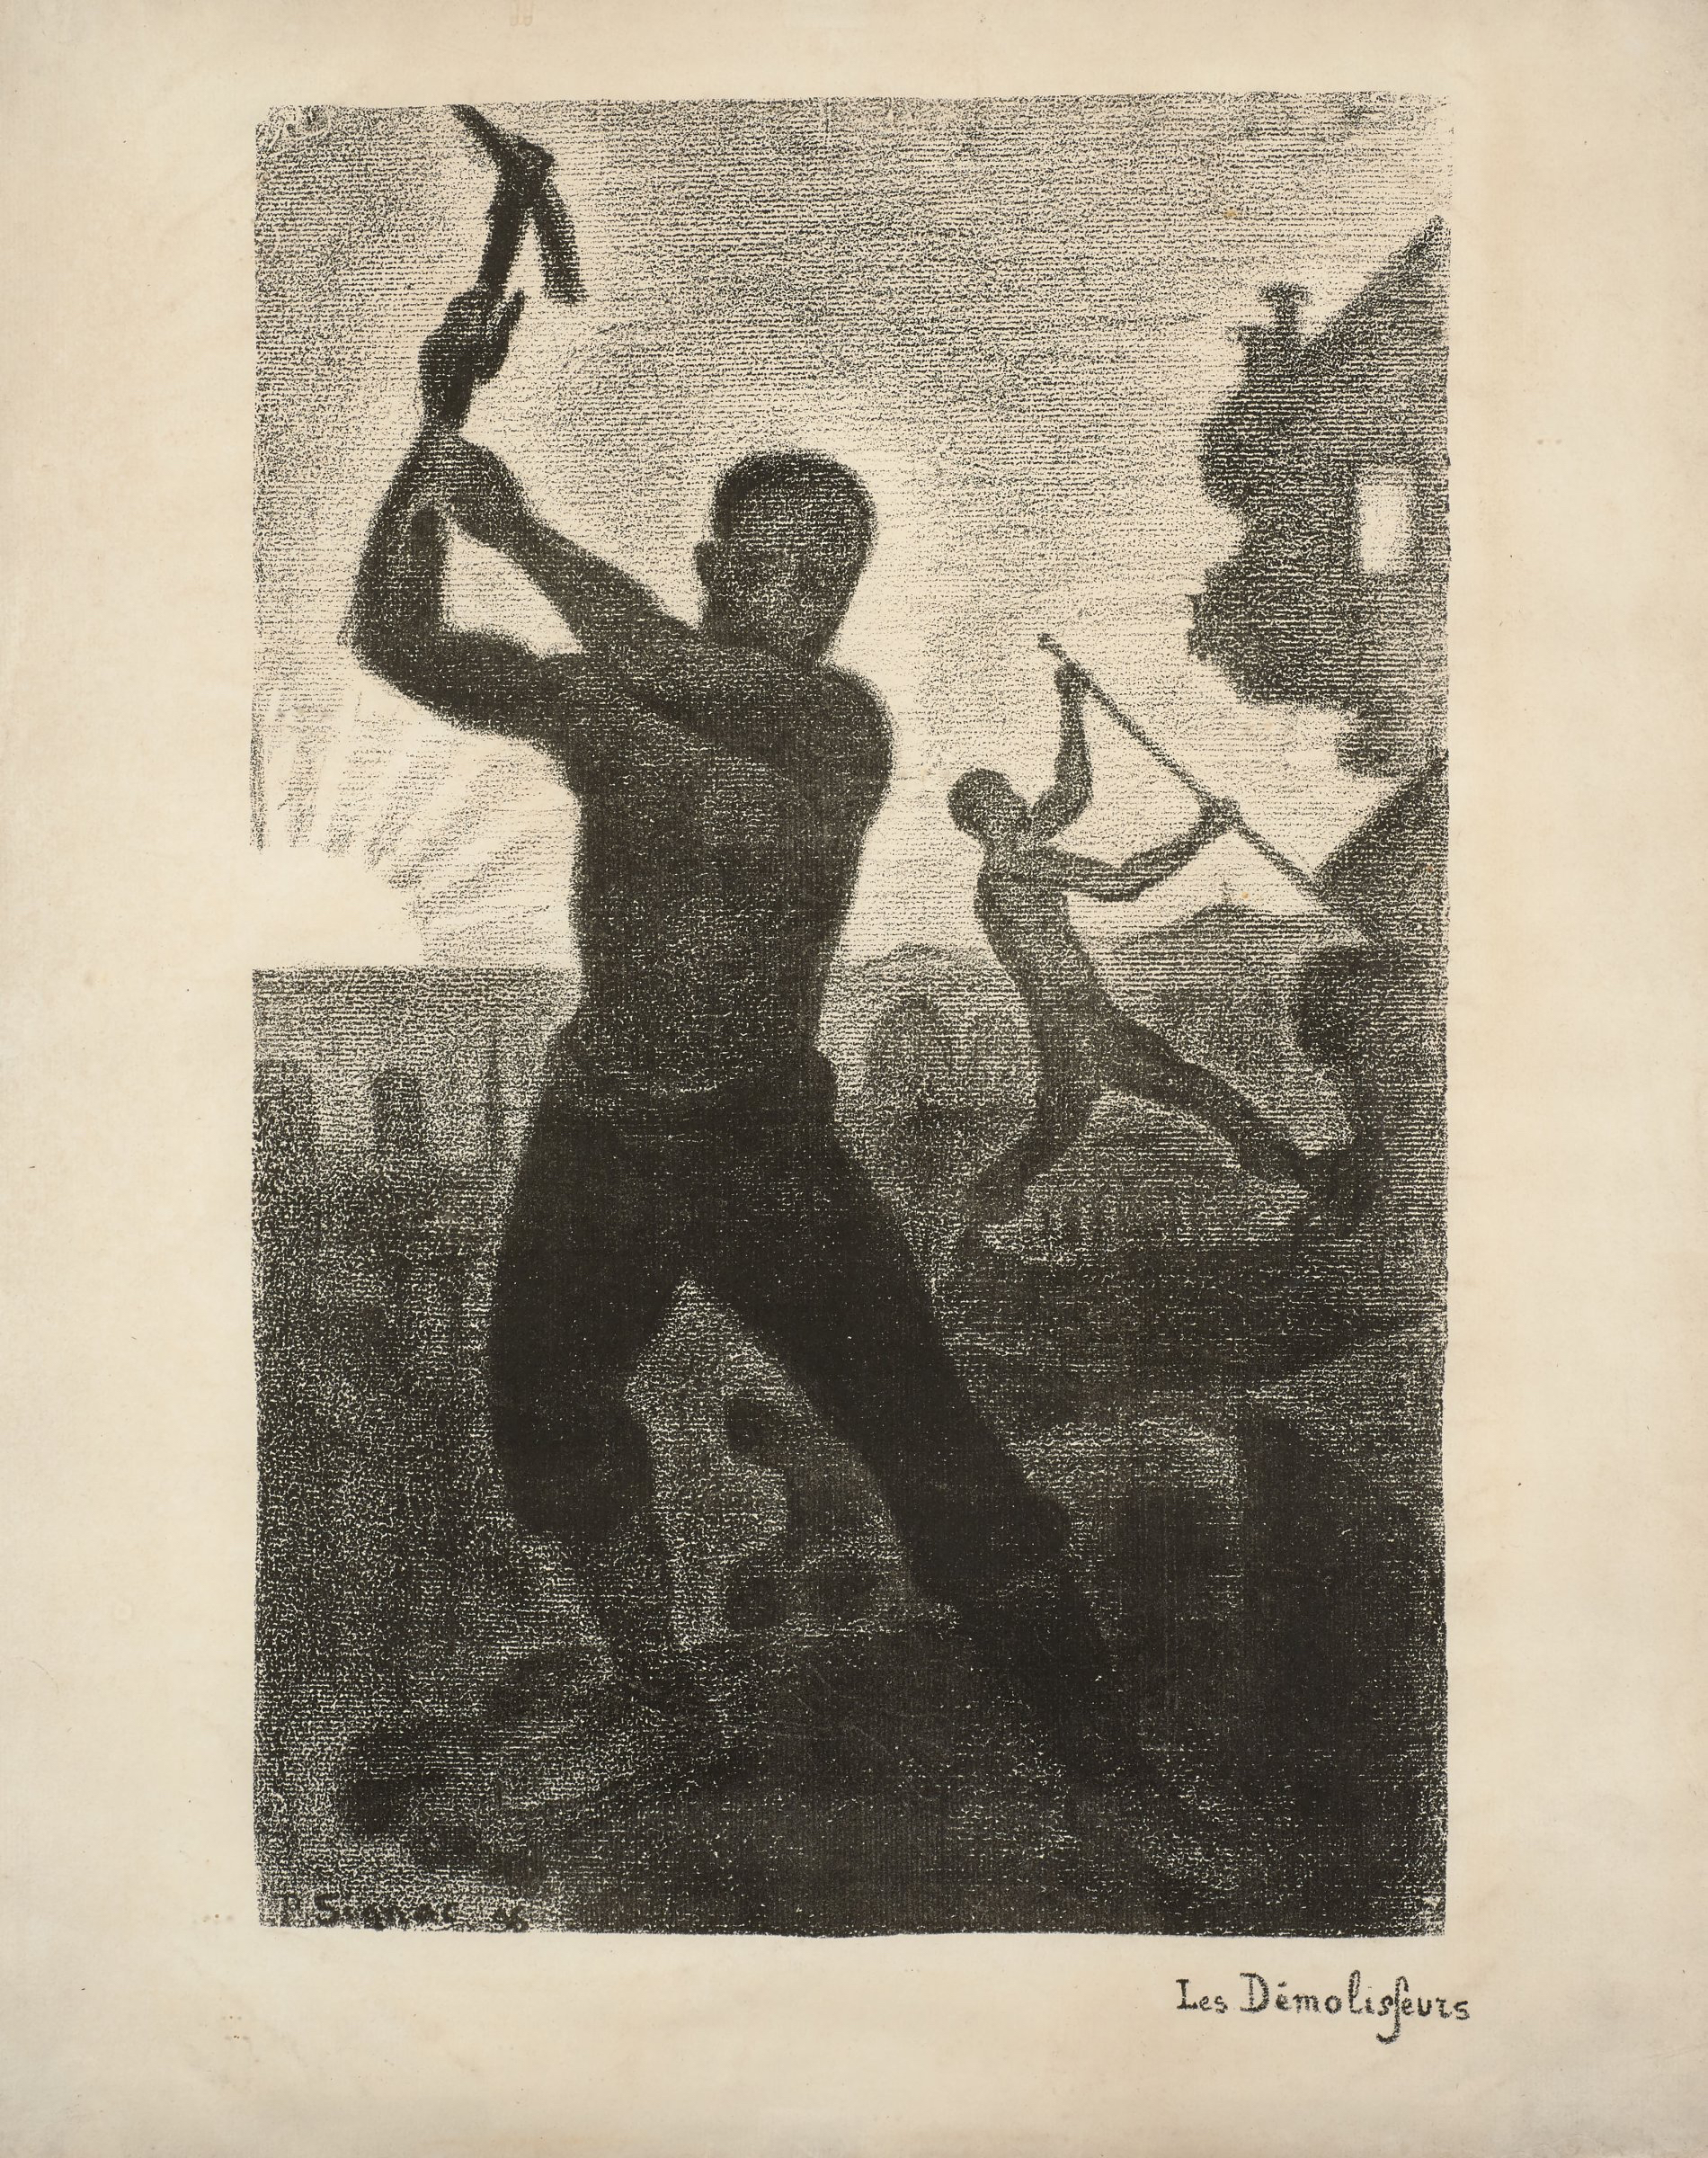 Paul Signac, Les Démolisseurs, lithograph 1896